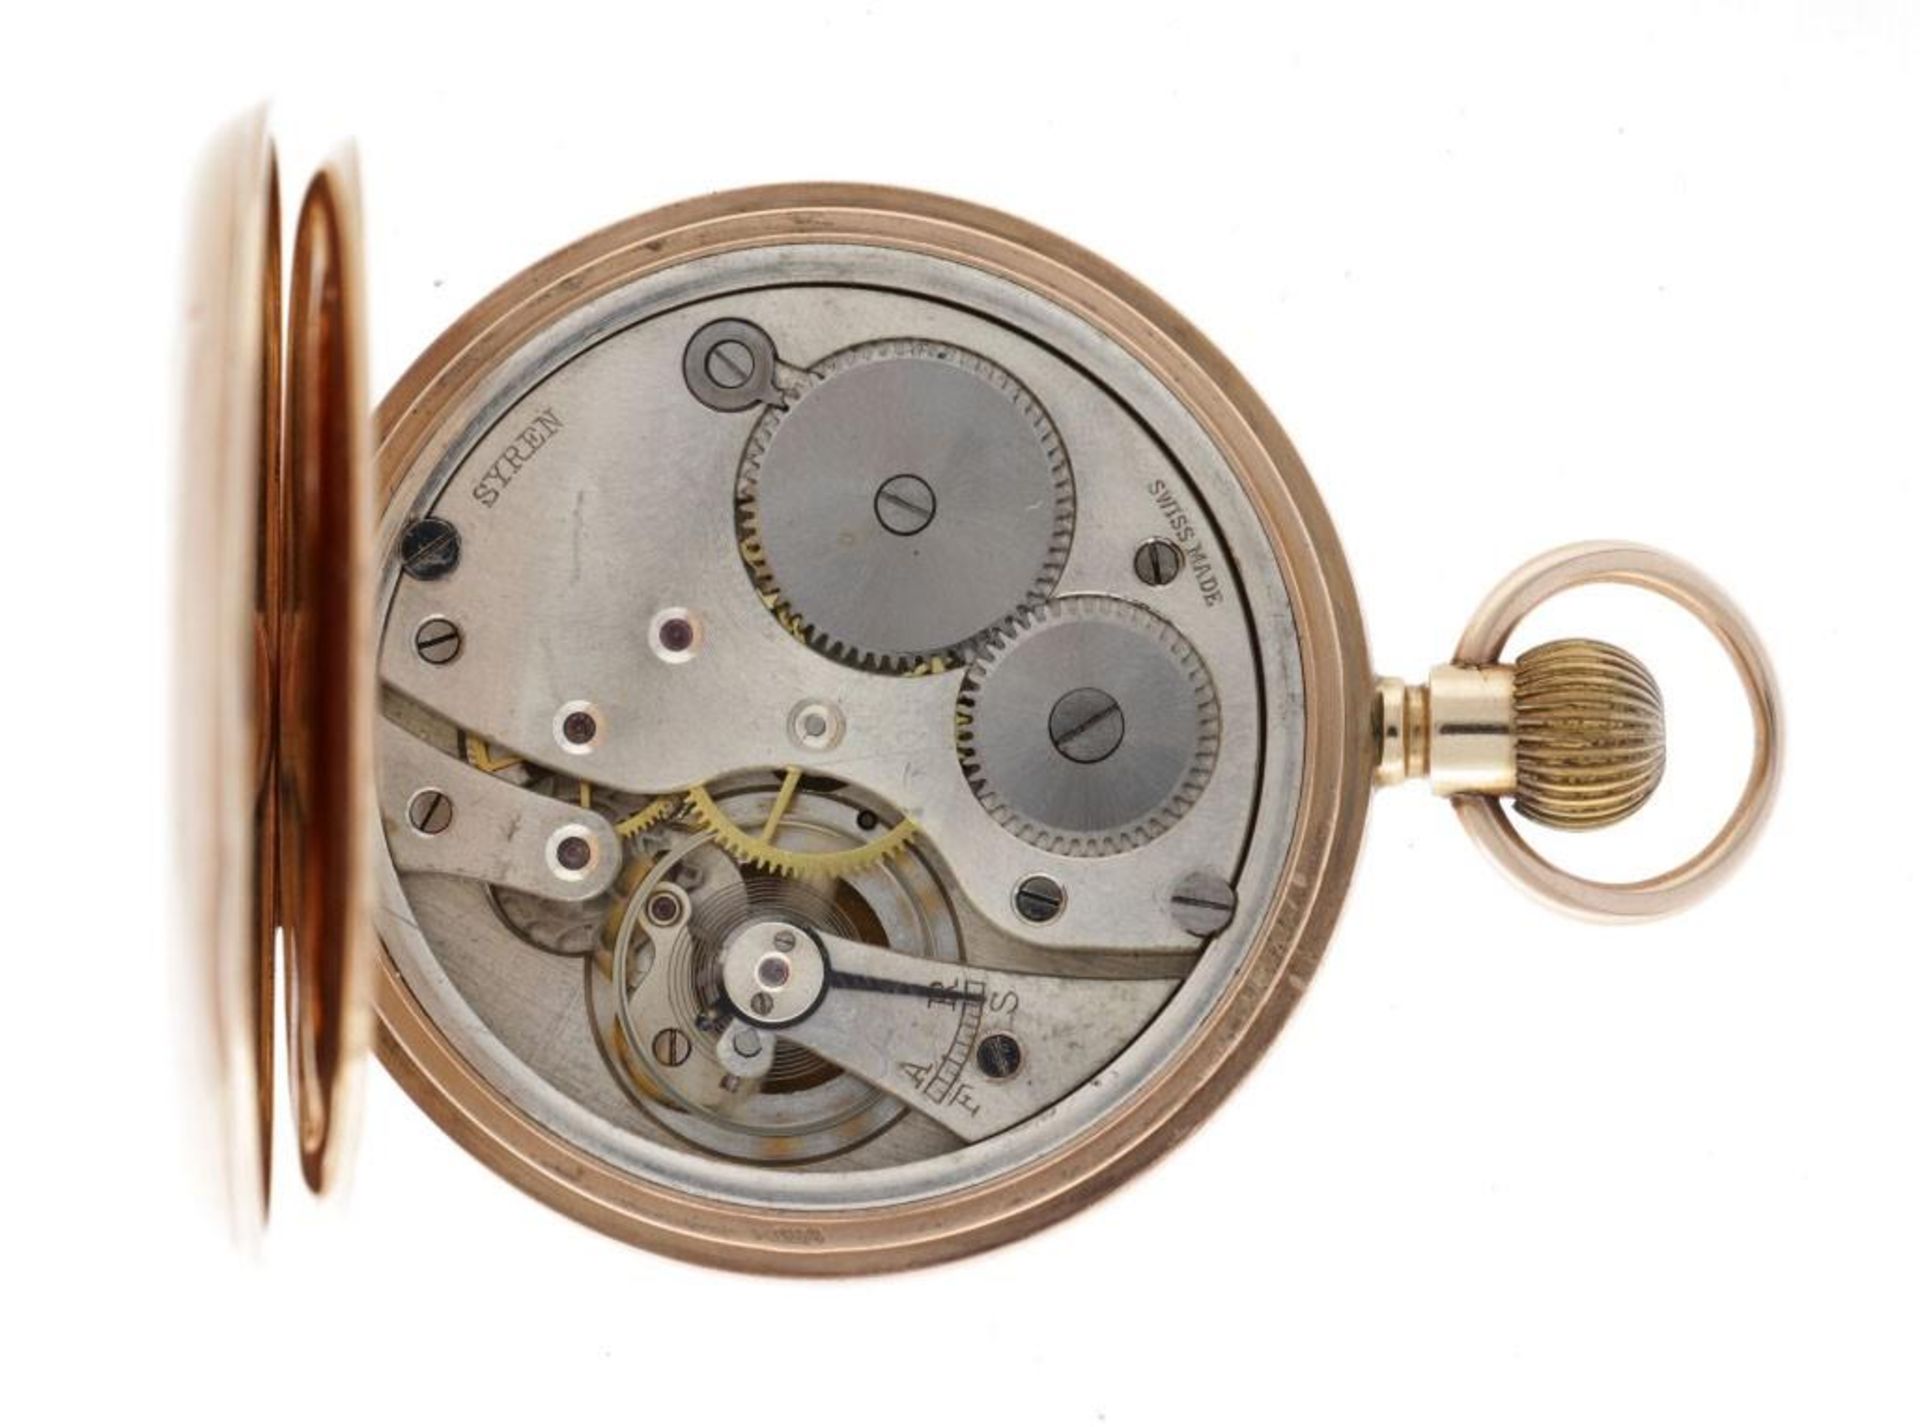 Syren lever escapement - Men's Pocket Watch - appr. 1905. - Bild 3 aus 5